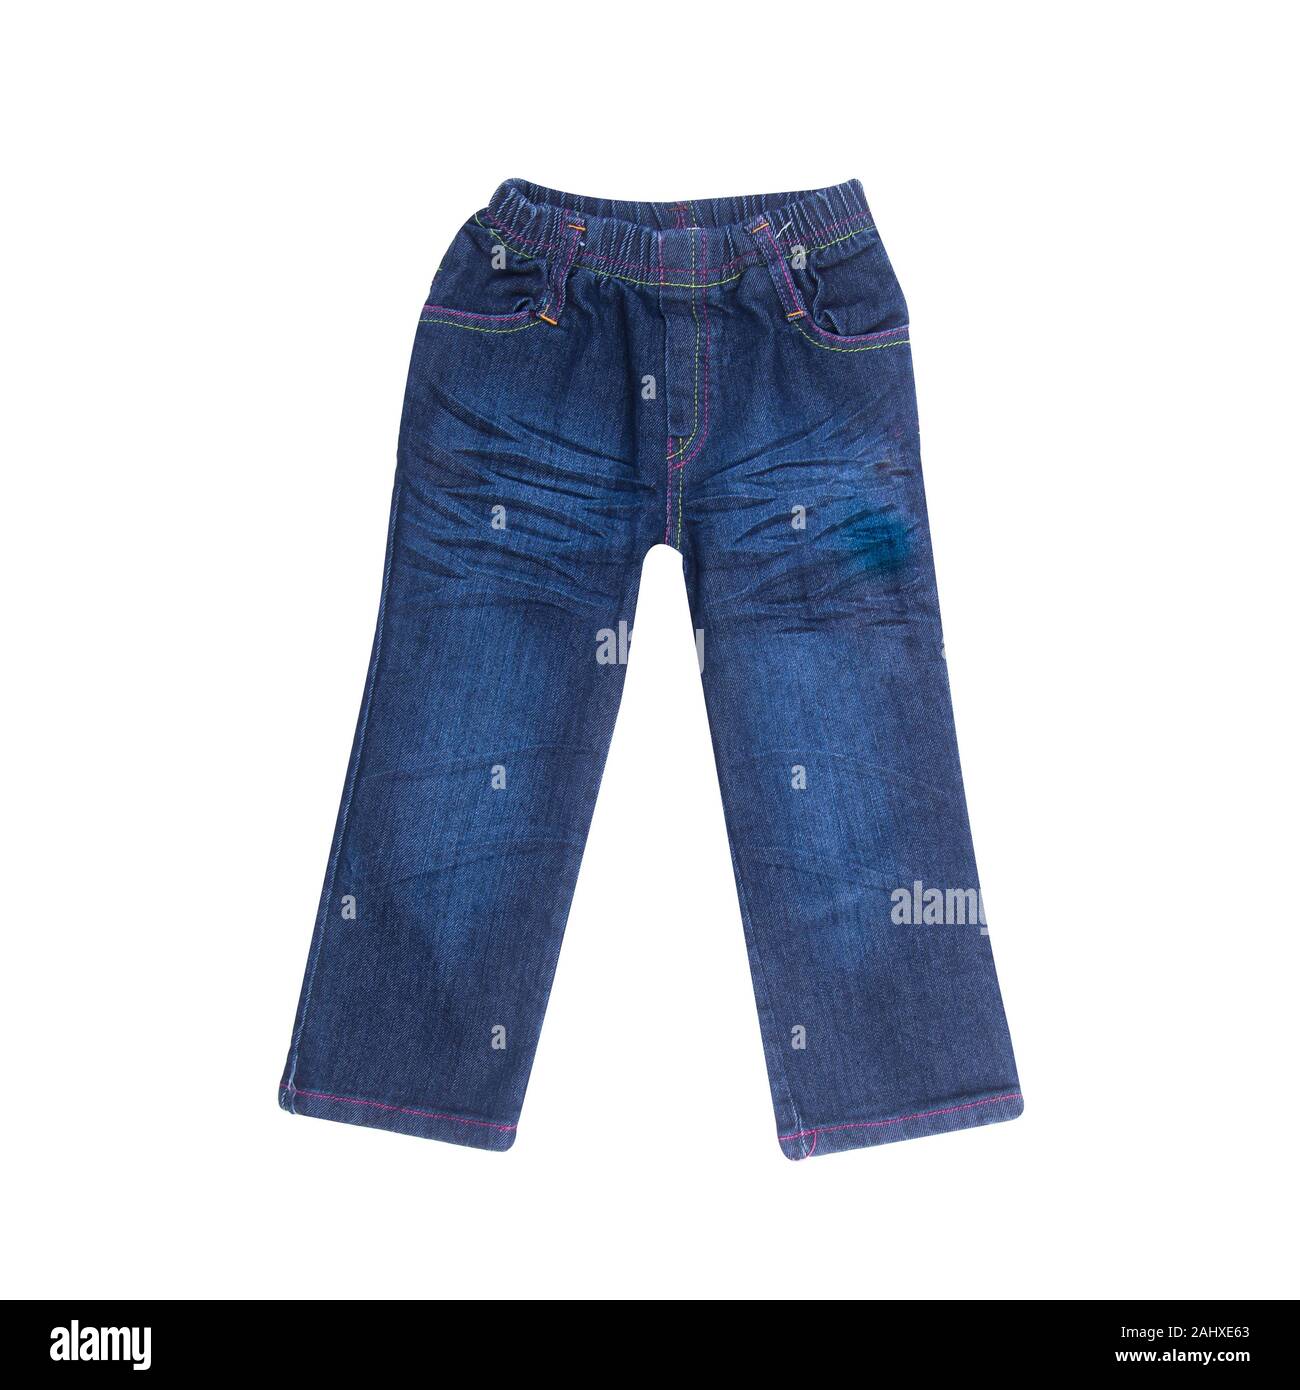 Jean ou bleu jeans avec concept sur fond blanc nouveau Photo Stock - Alamy